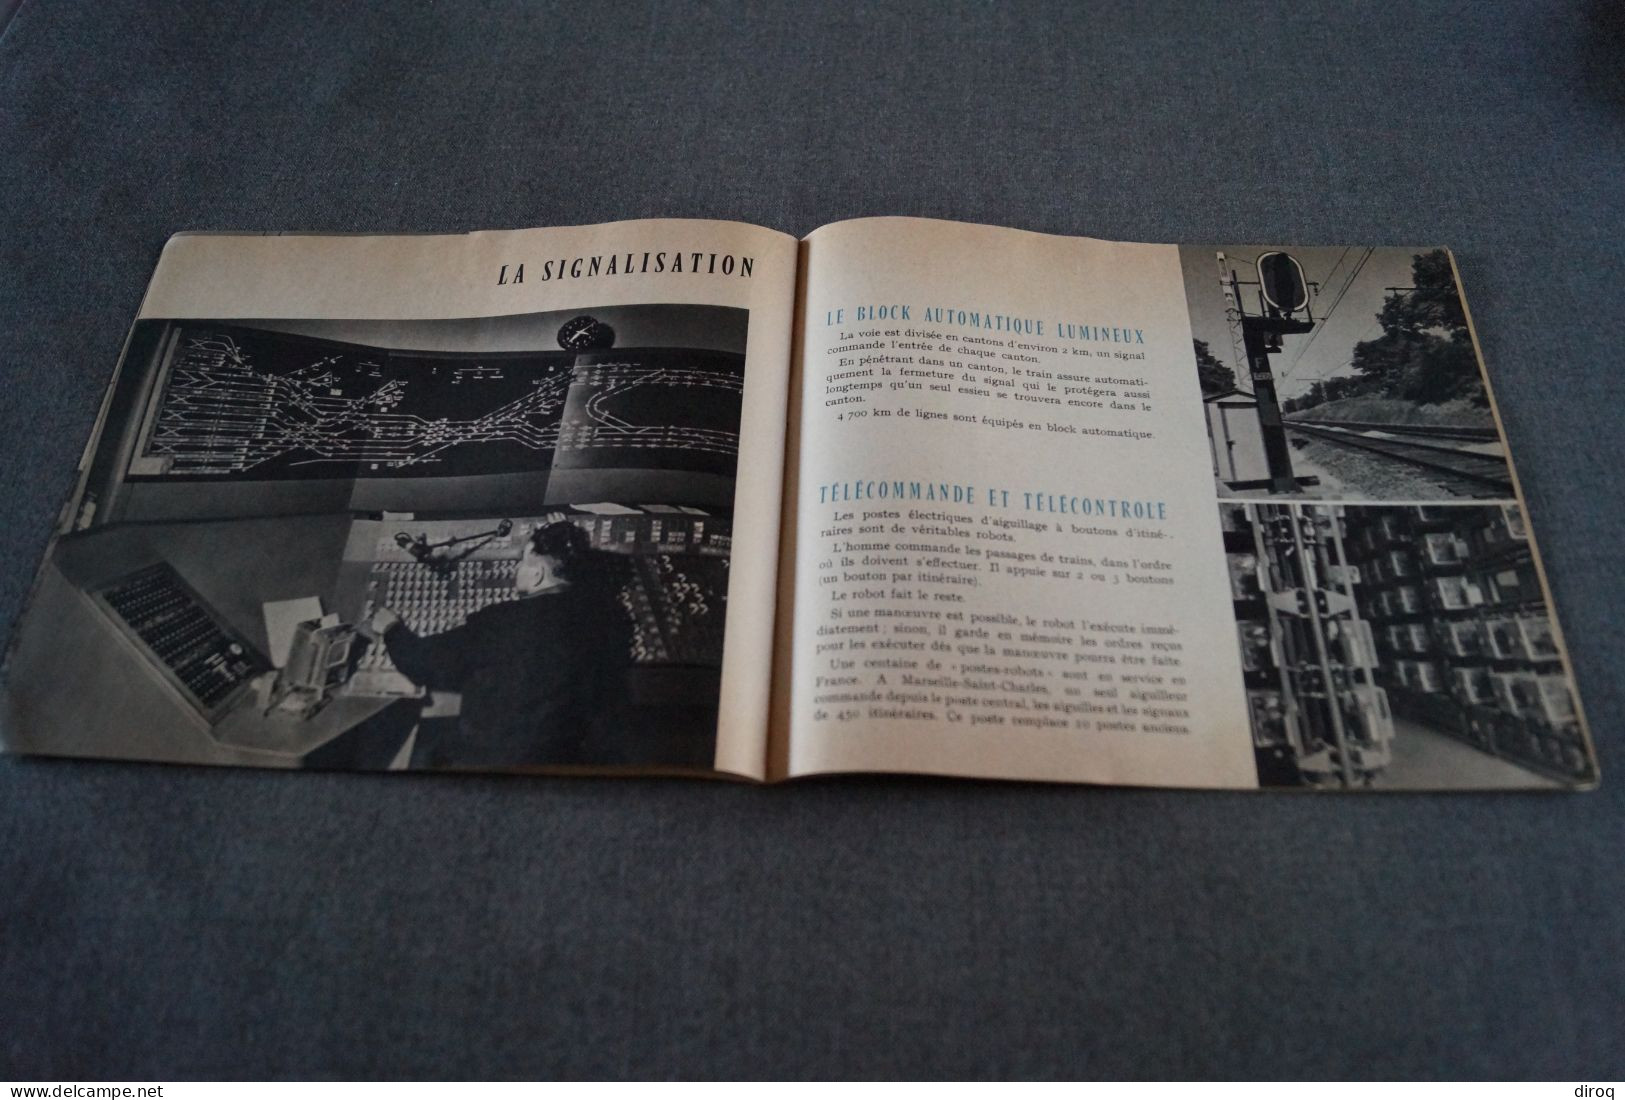 Expo 1958, Bruxelles,publicitaire,LChemin De Fer Français,24 Pages,21 Cm. Sur 18 Cm. - Advertising